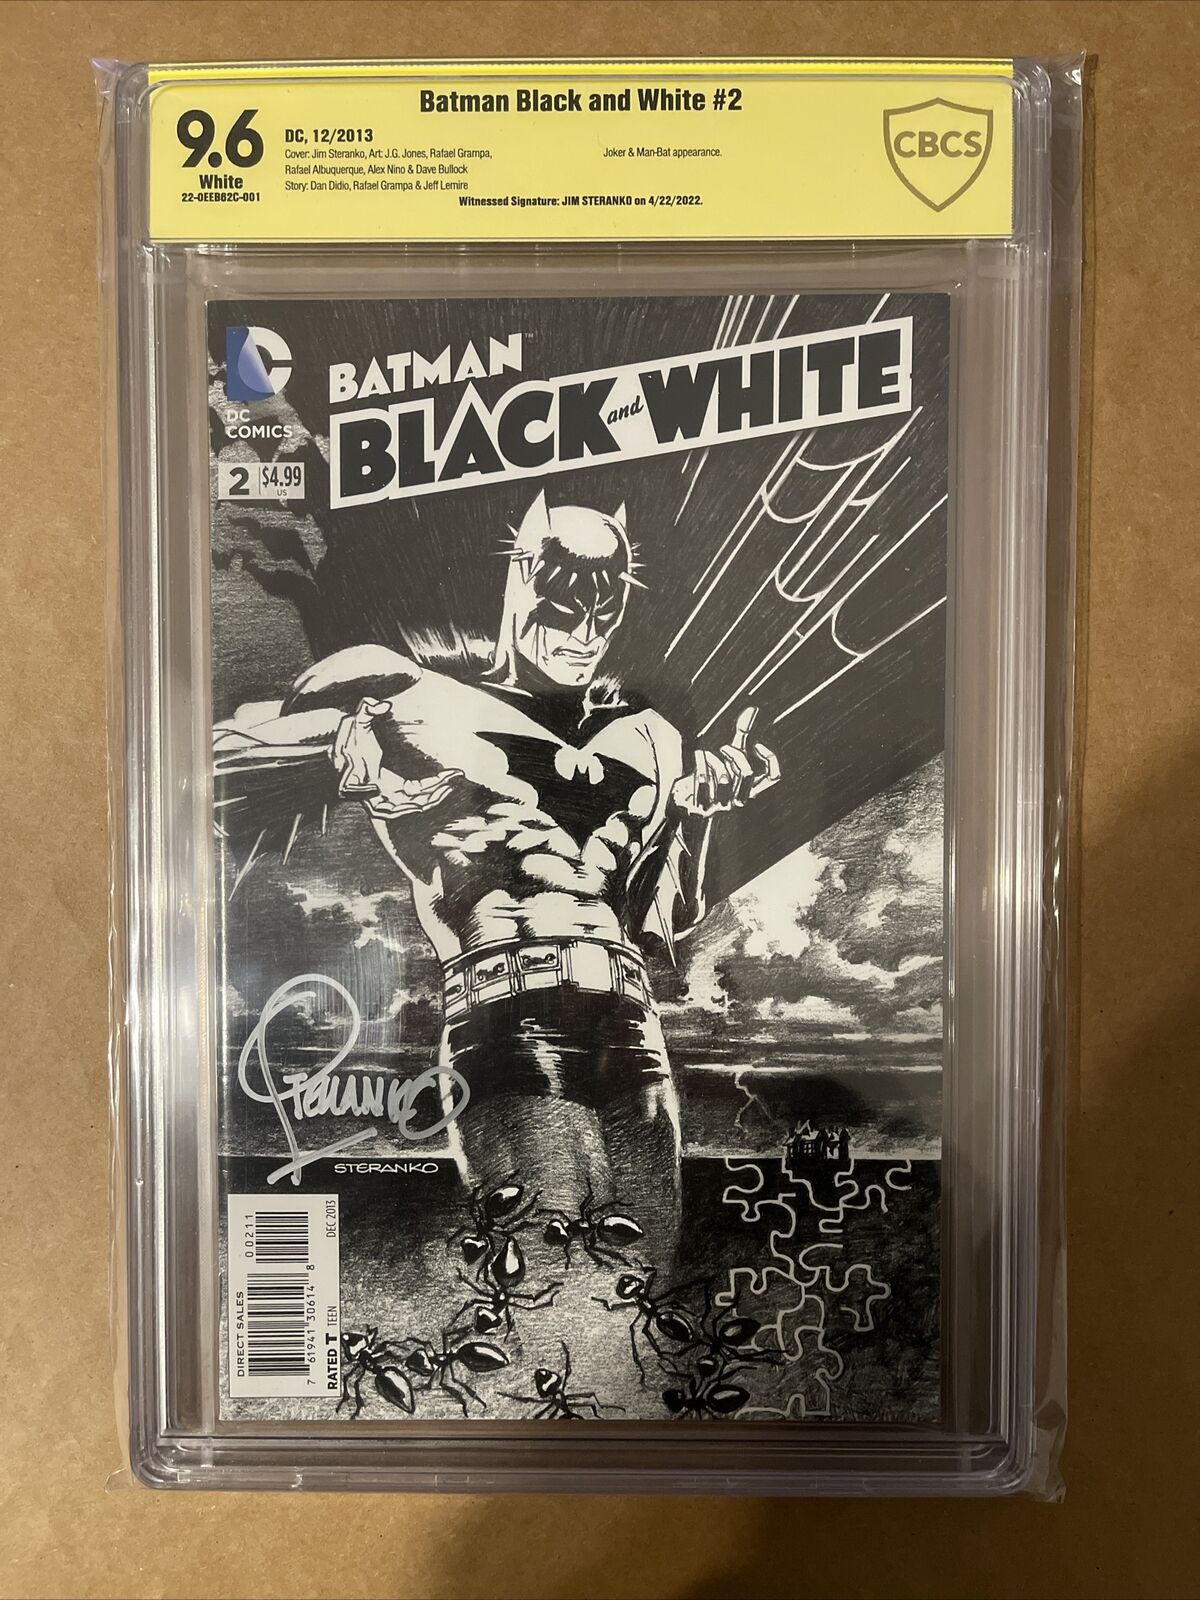 Batman: Black and White #2 (2013) CBCS 9.6 Signed By Jim Steranko